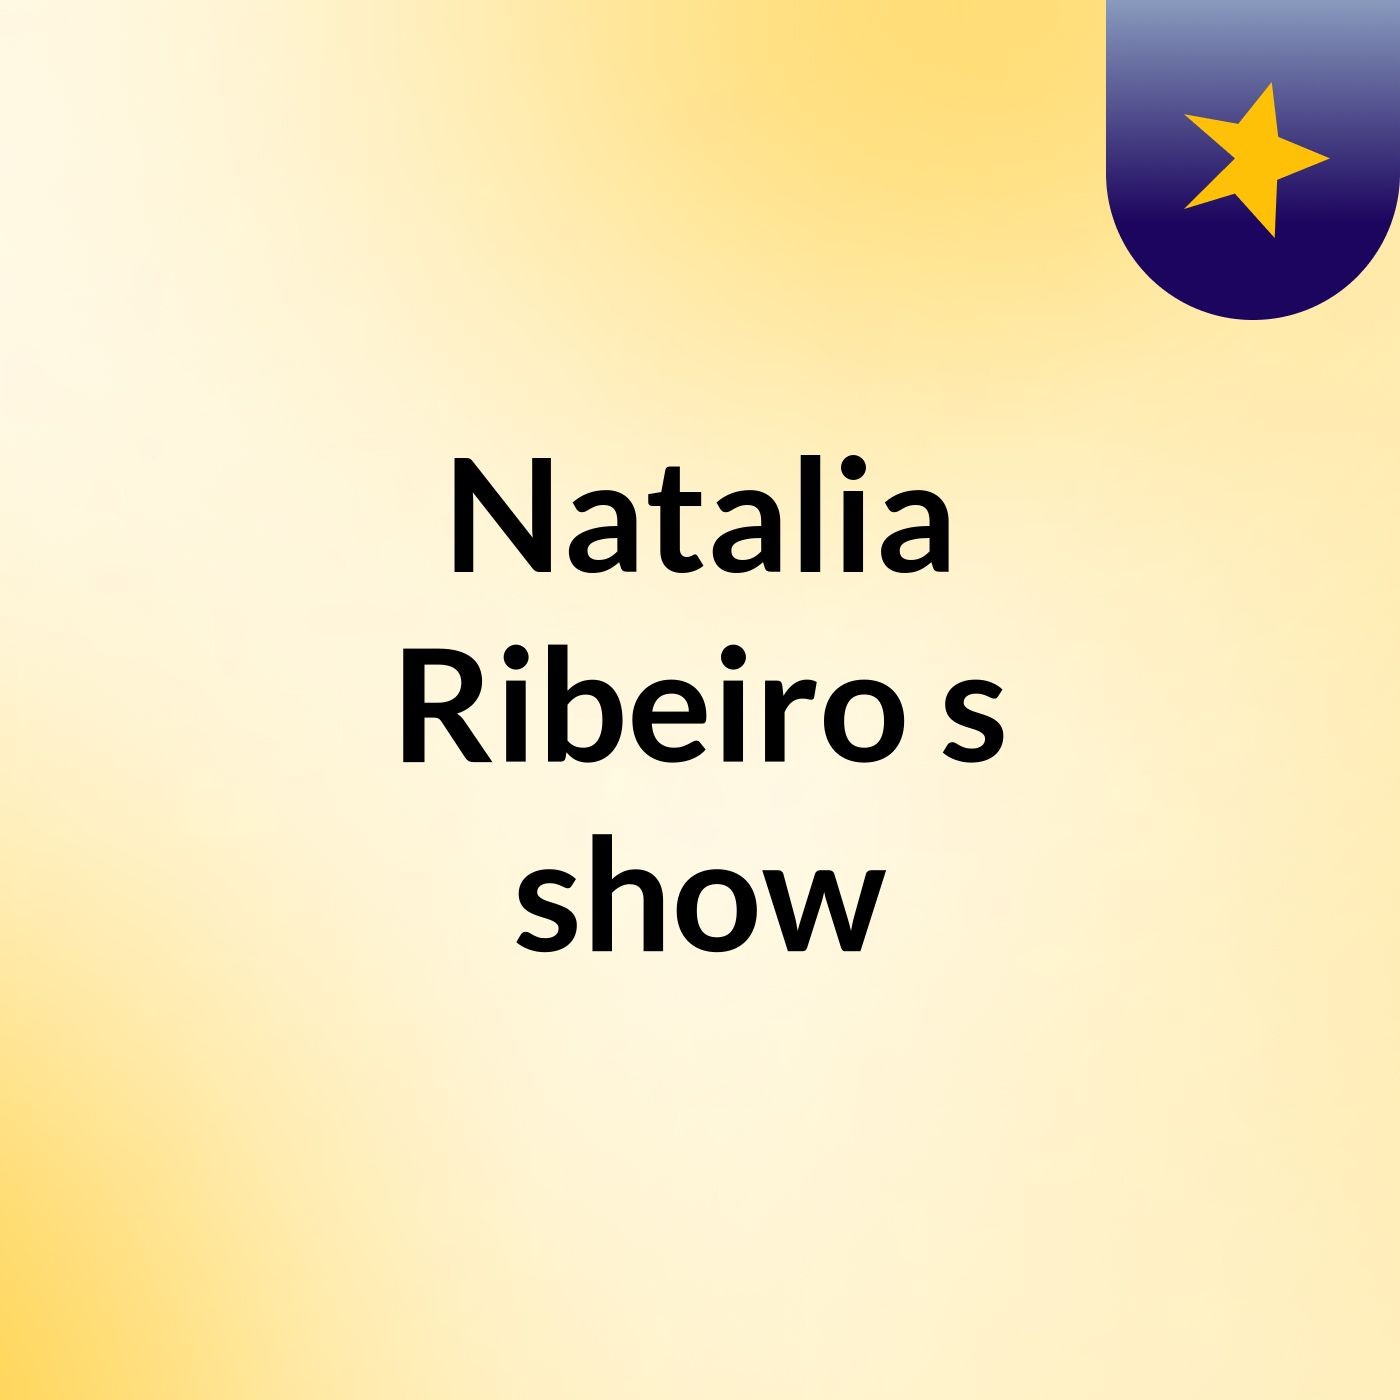 Natalia Ribeiro's show